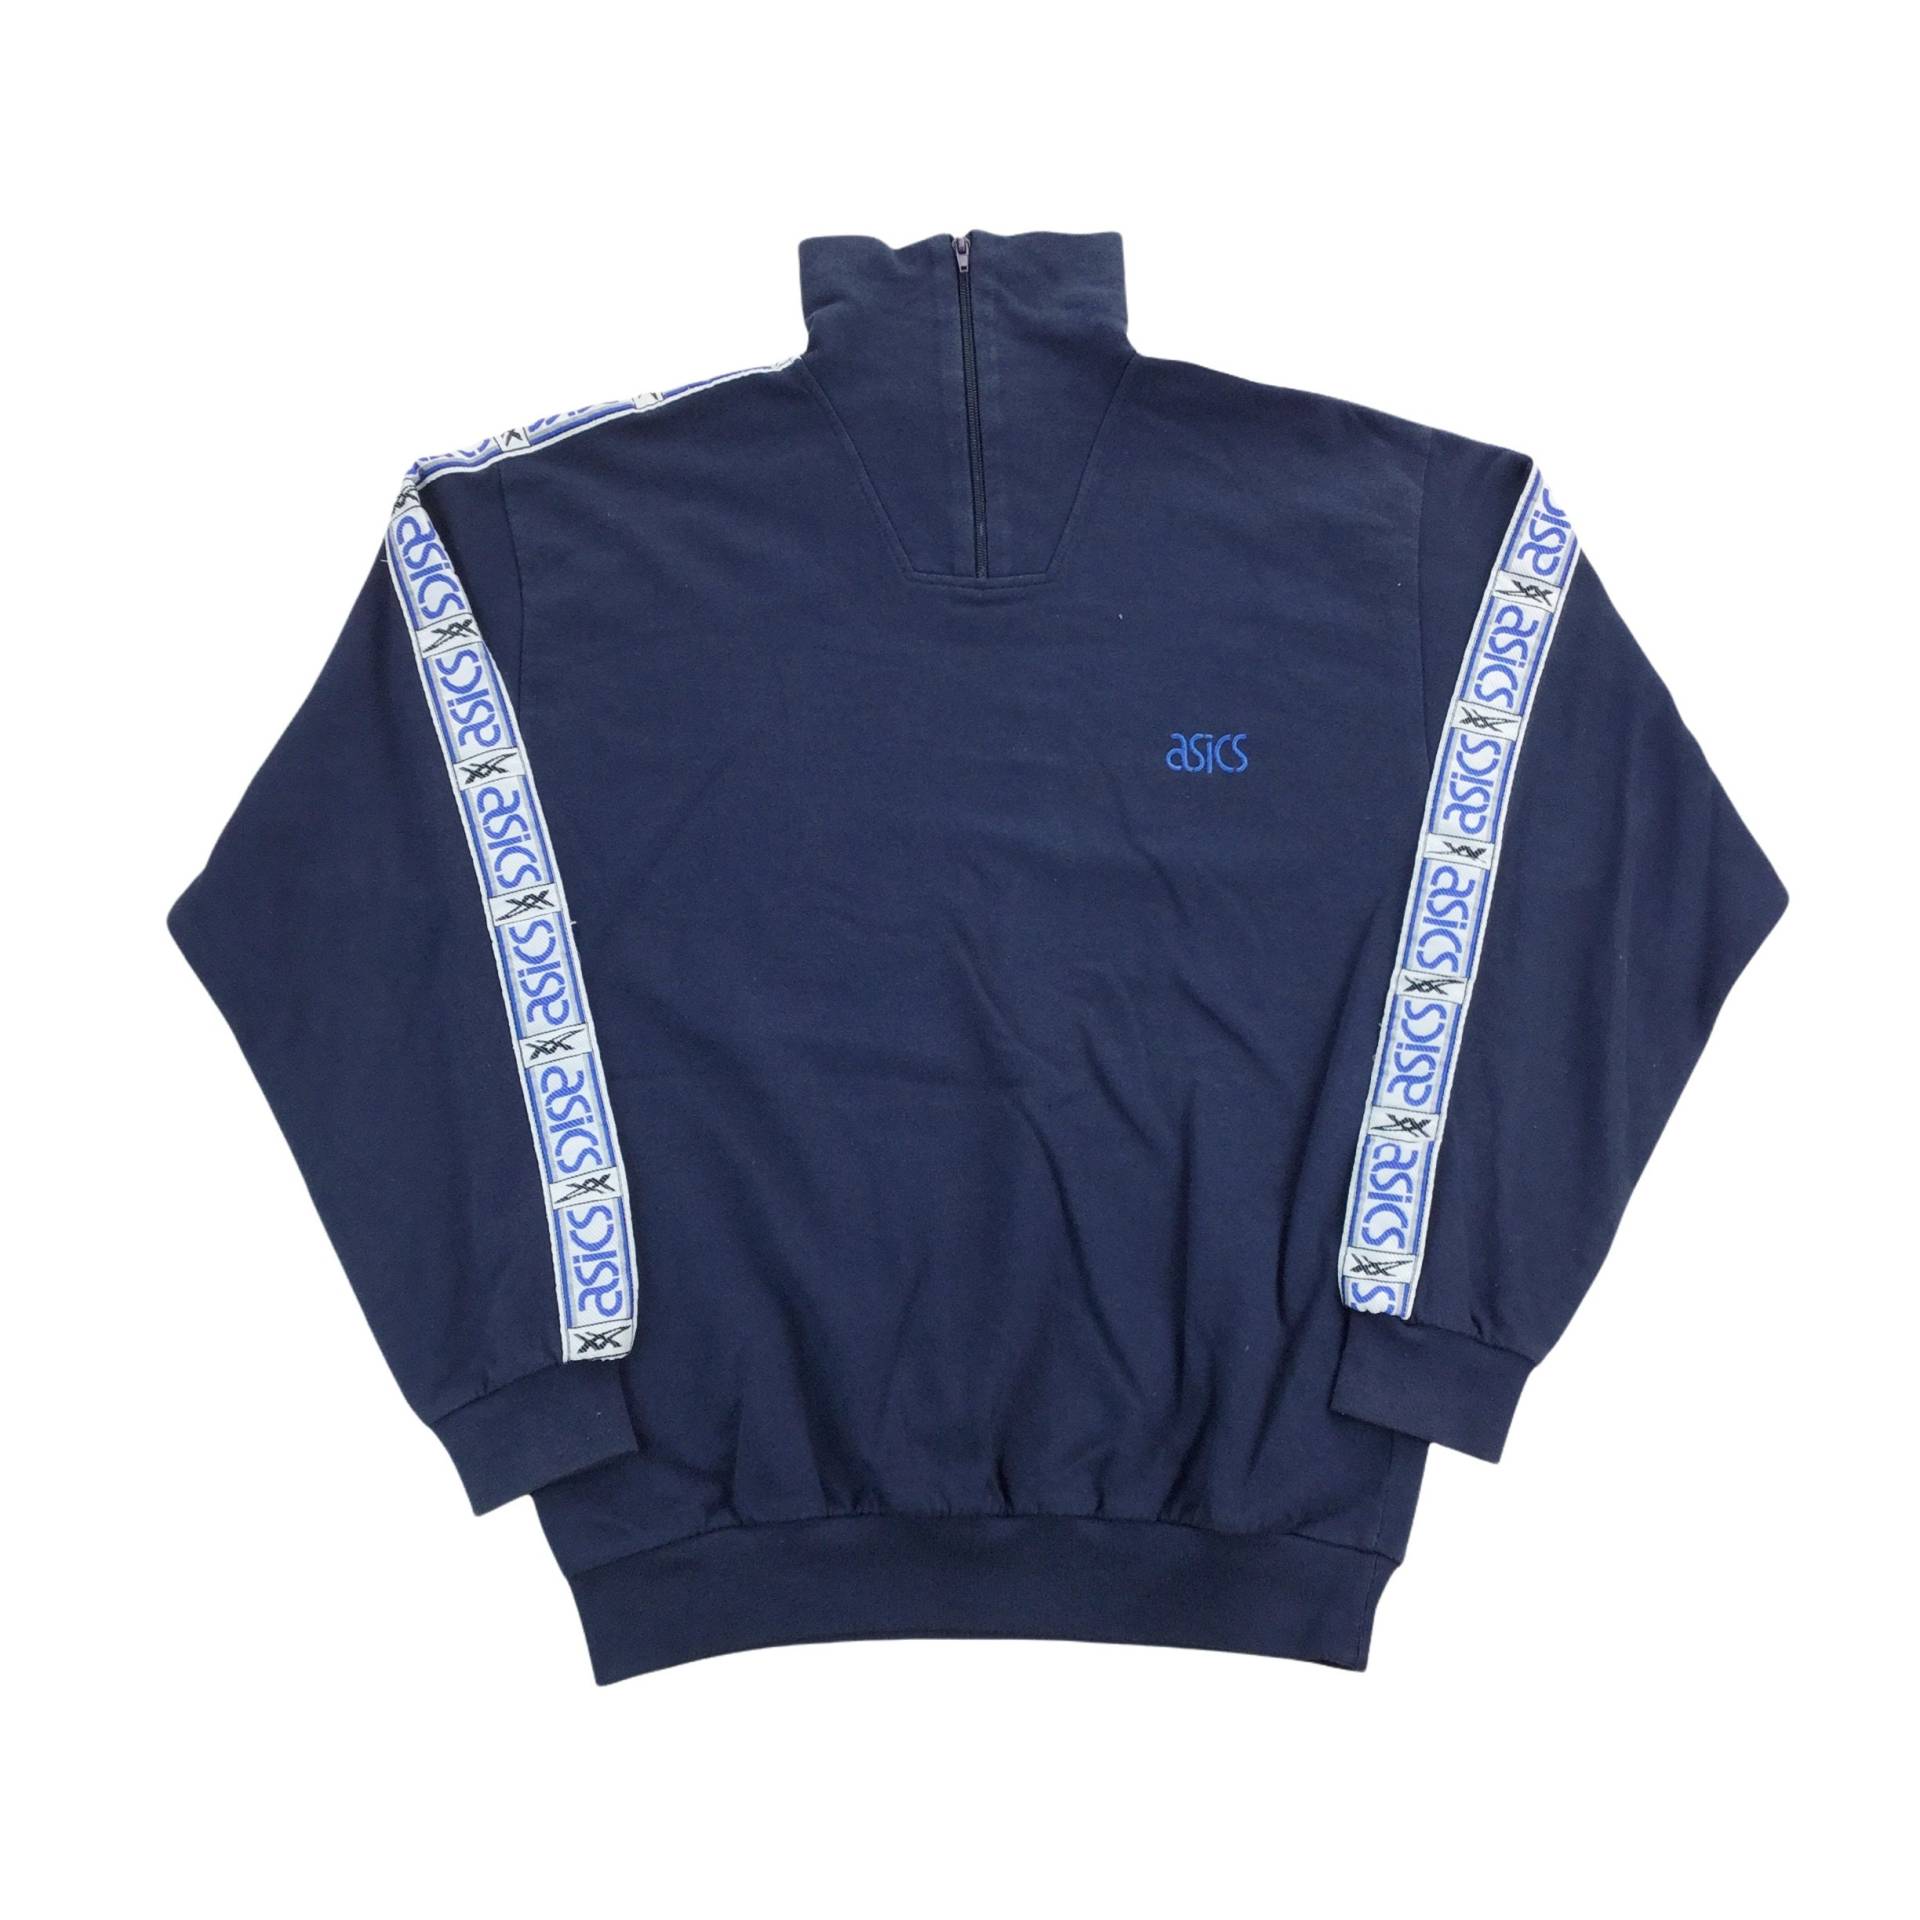 Vintage Asics 90S Zip Sweatshirt - Xl Größe Männer Pullover Gebraucht von aloisstudio